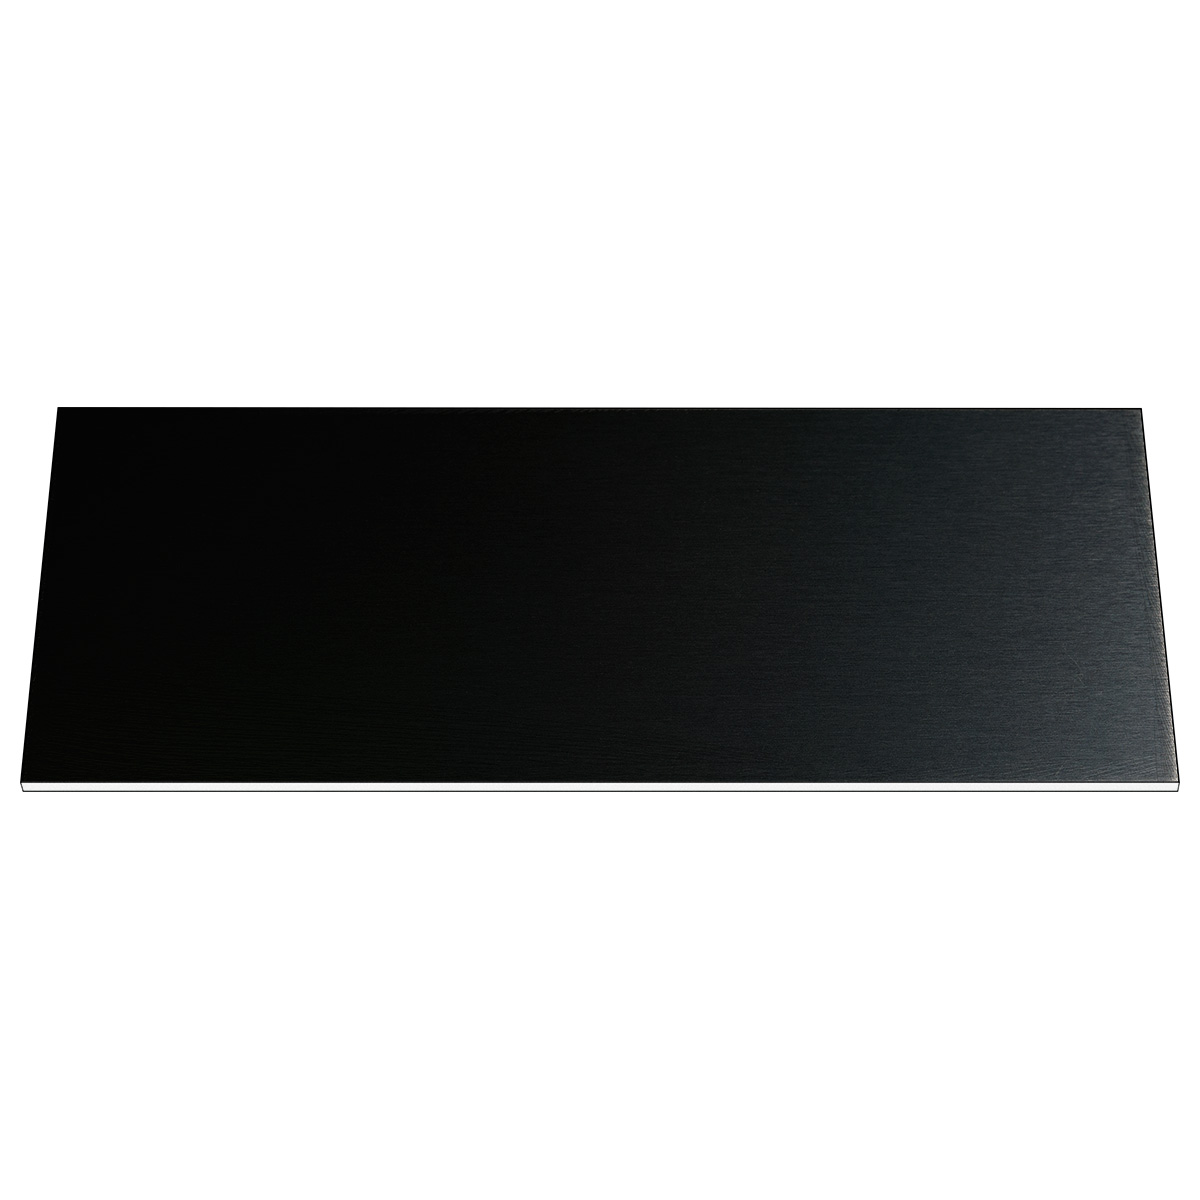 Plaque pour la gravure Resopal, noir, rectangulaire, 100 x 40 mm, épaisseur 1,5 mm, avec colle